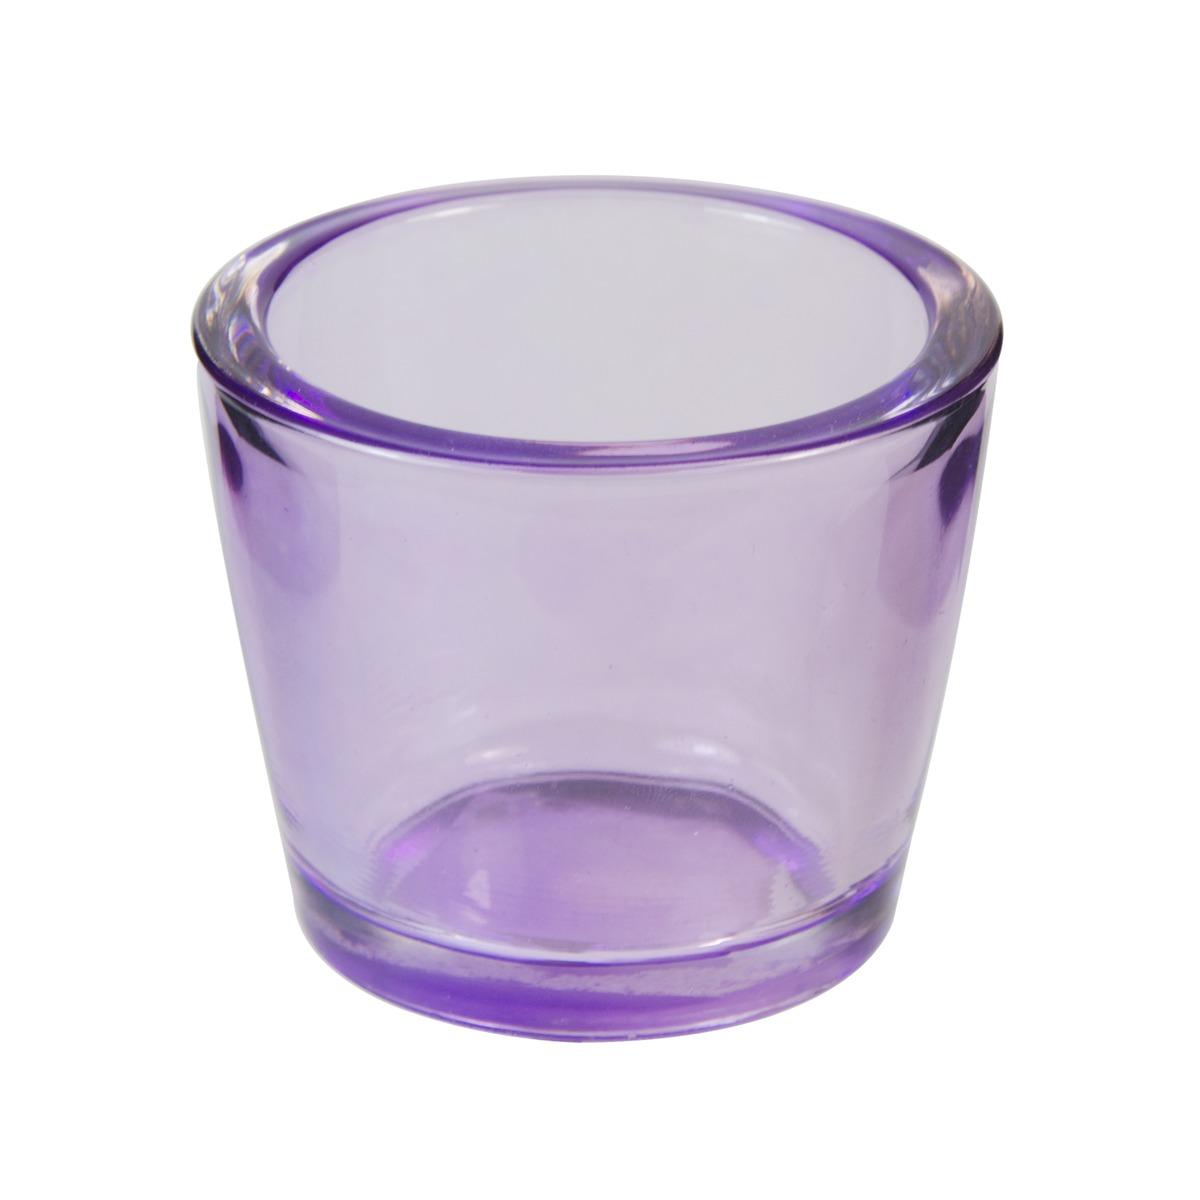 Photophore en verre - Diamètre 8 cm - Hauteur 6,5 cm - Violet